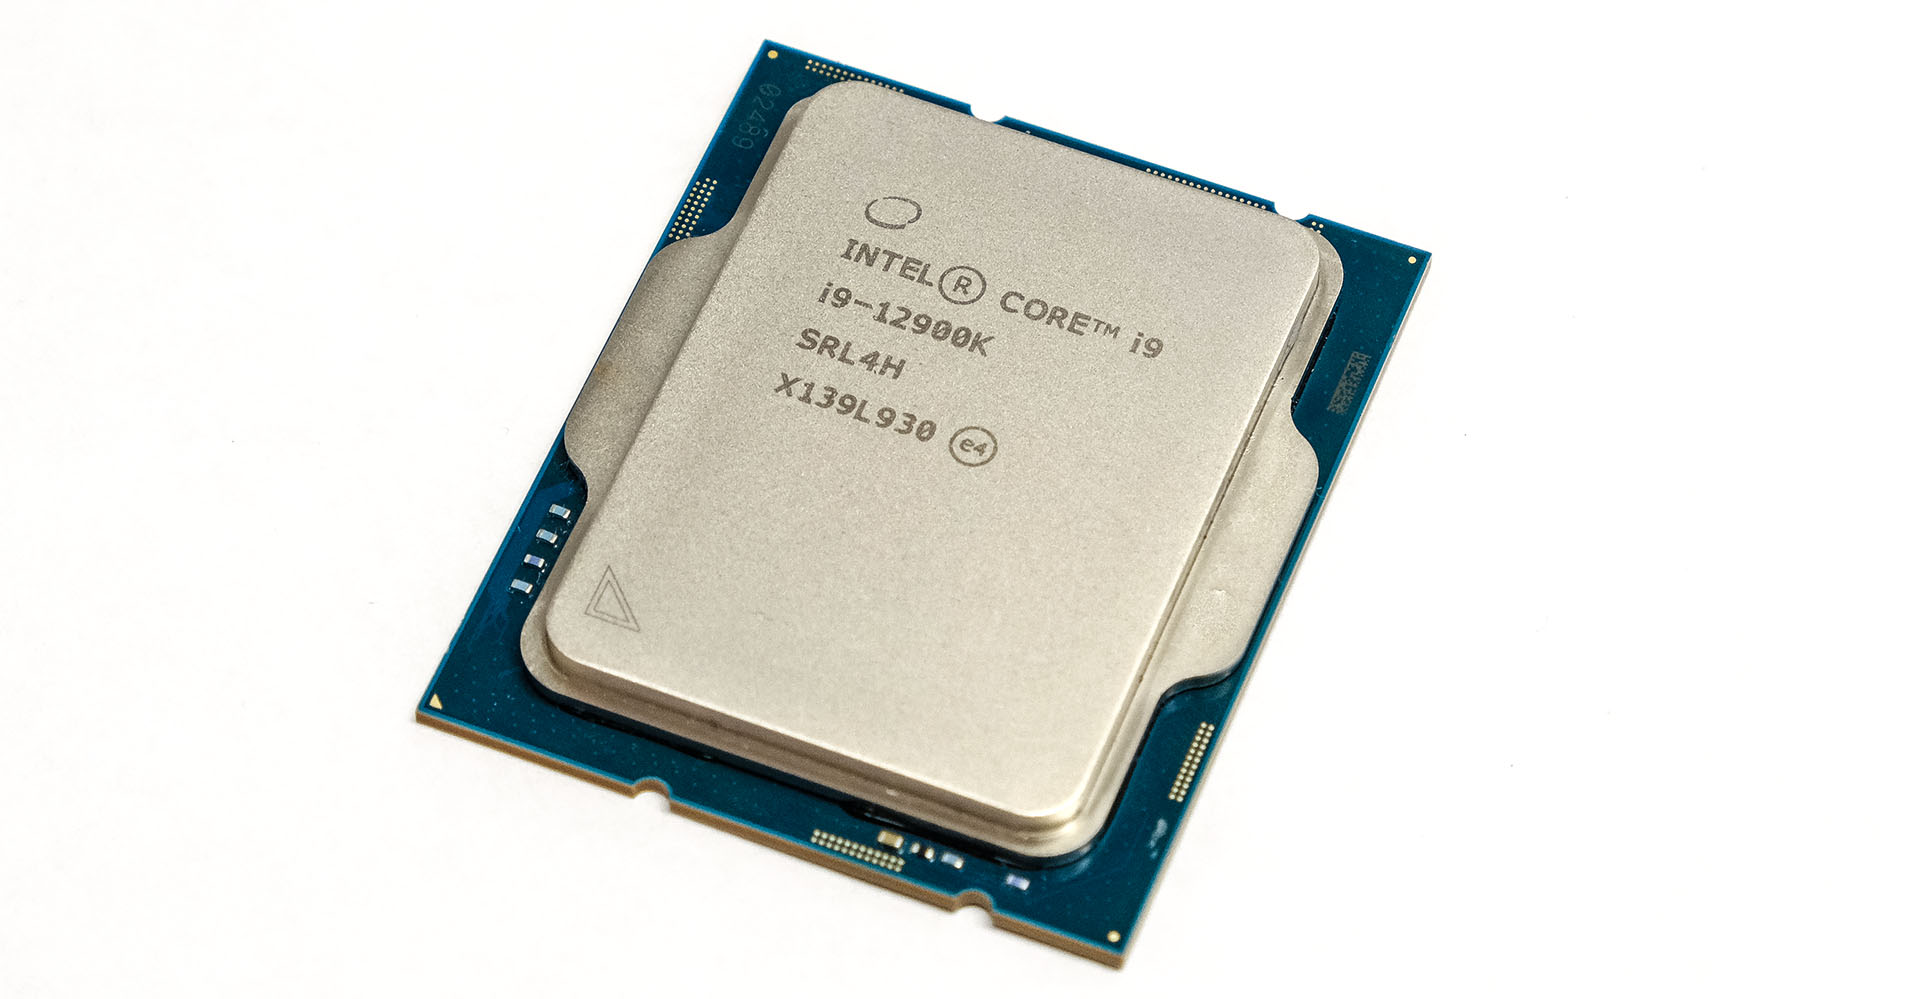 Intel CORE i9-12900K おまけあり金額変更しました